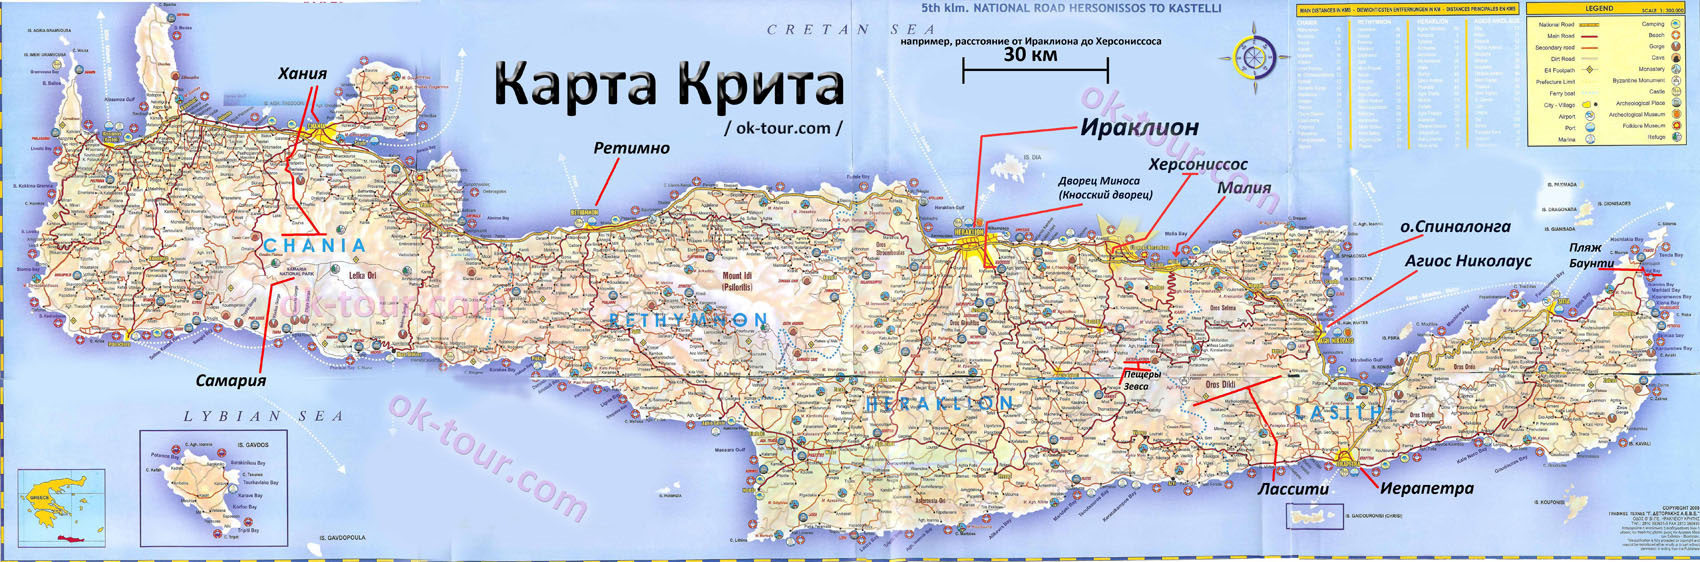 Достопримечательности ханьи (крит) и её окрестностей на карте — куда сходить, что посмотреть самостоятельно, фото и отзывы